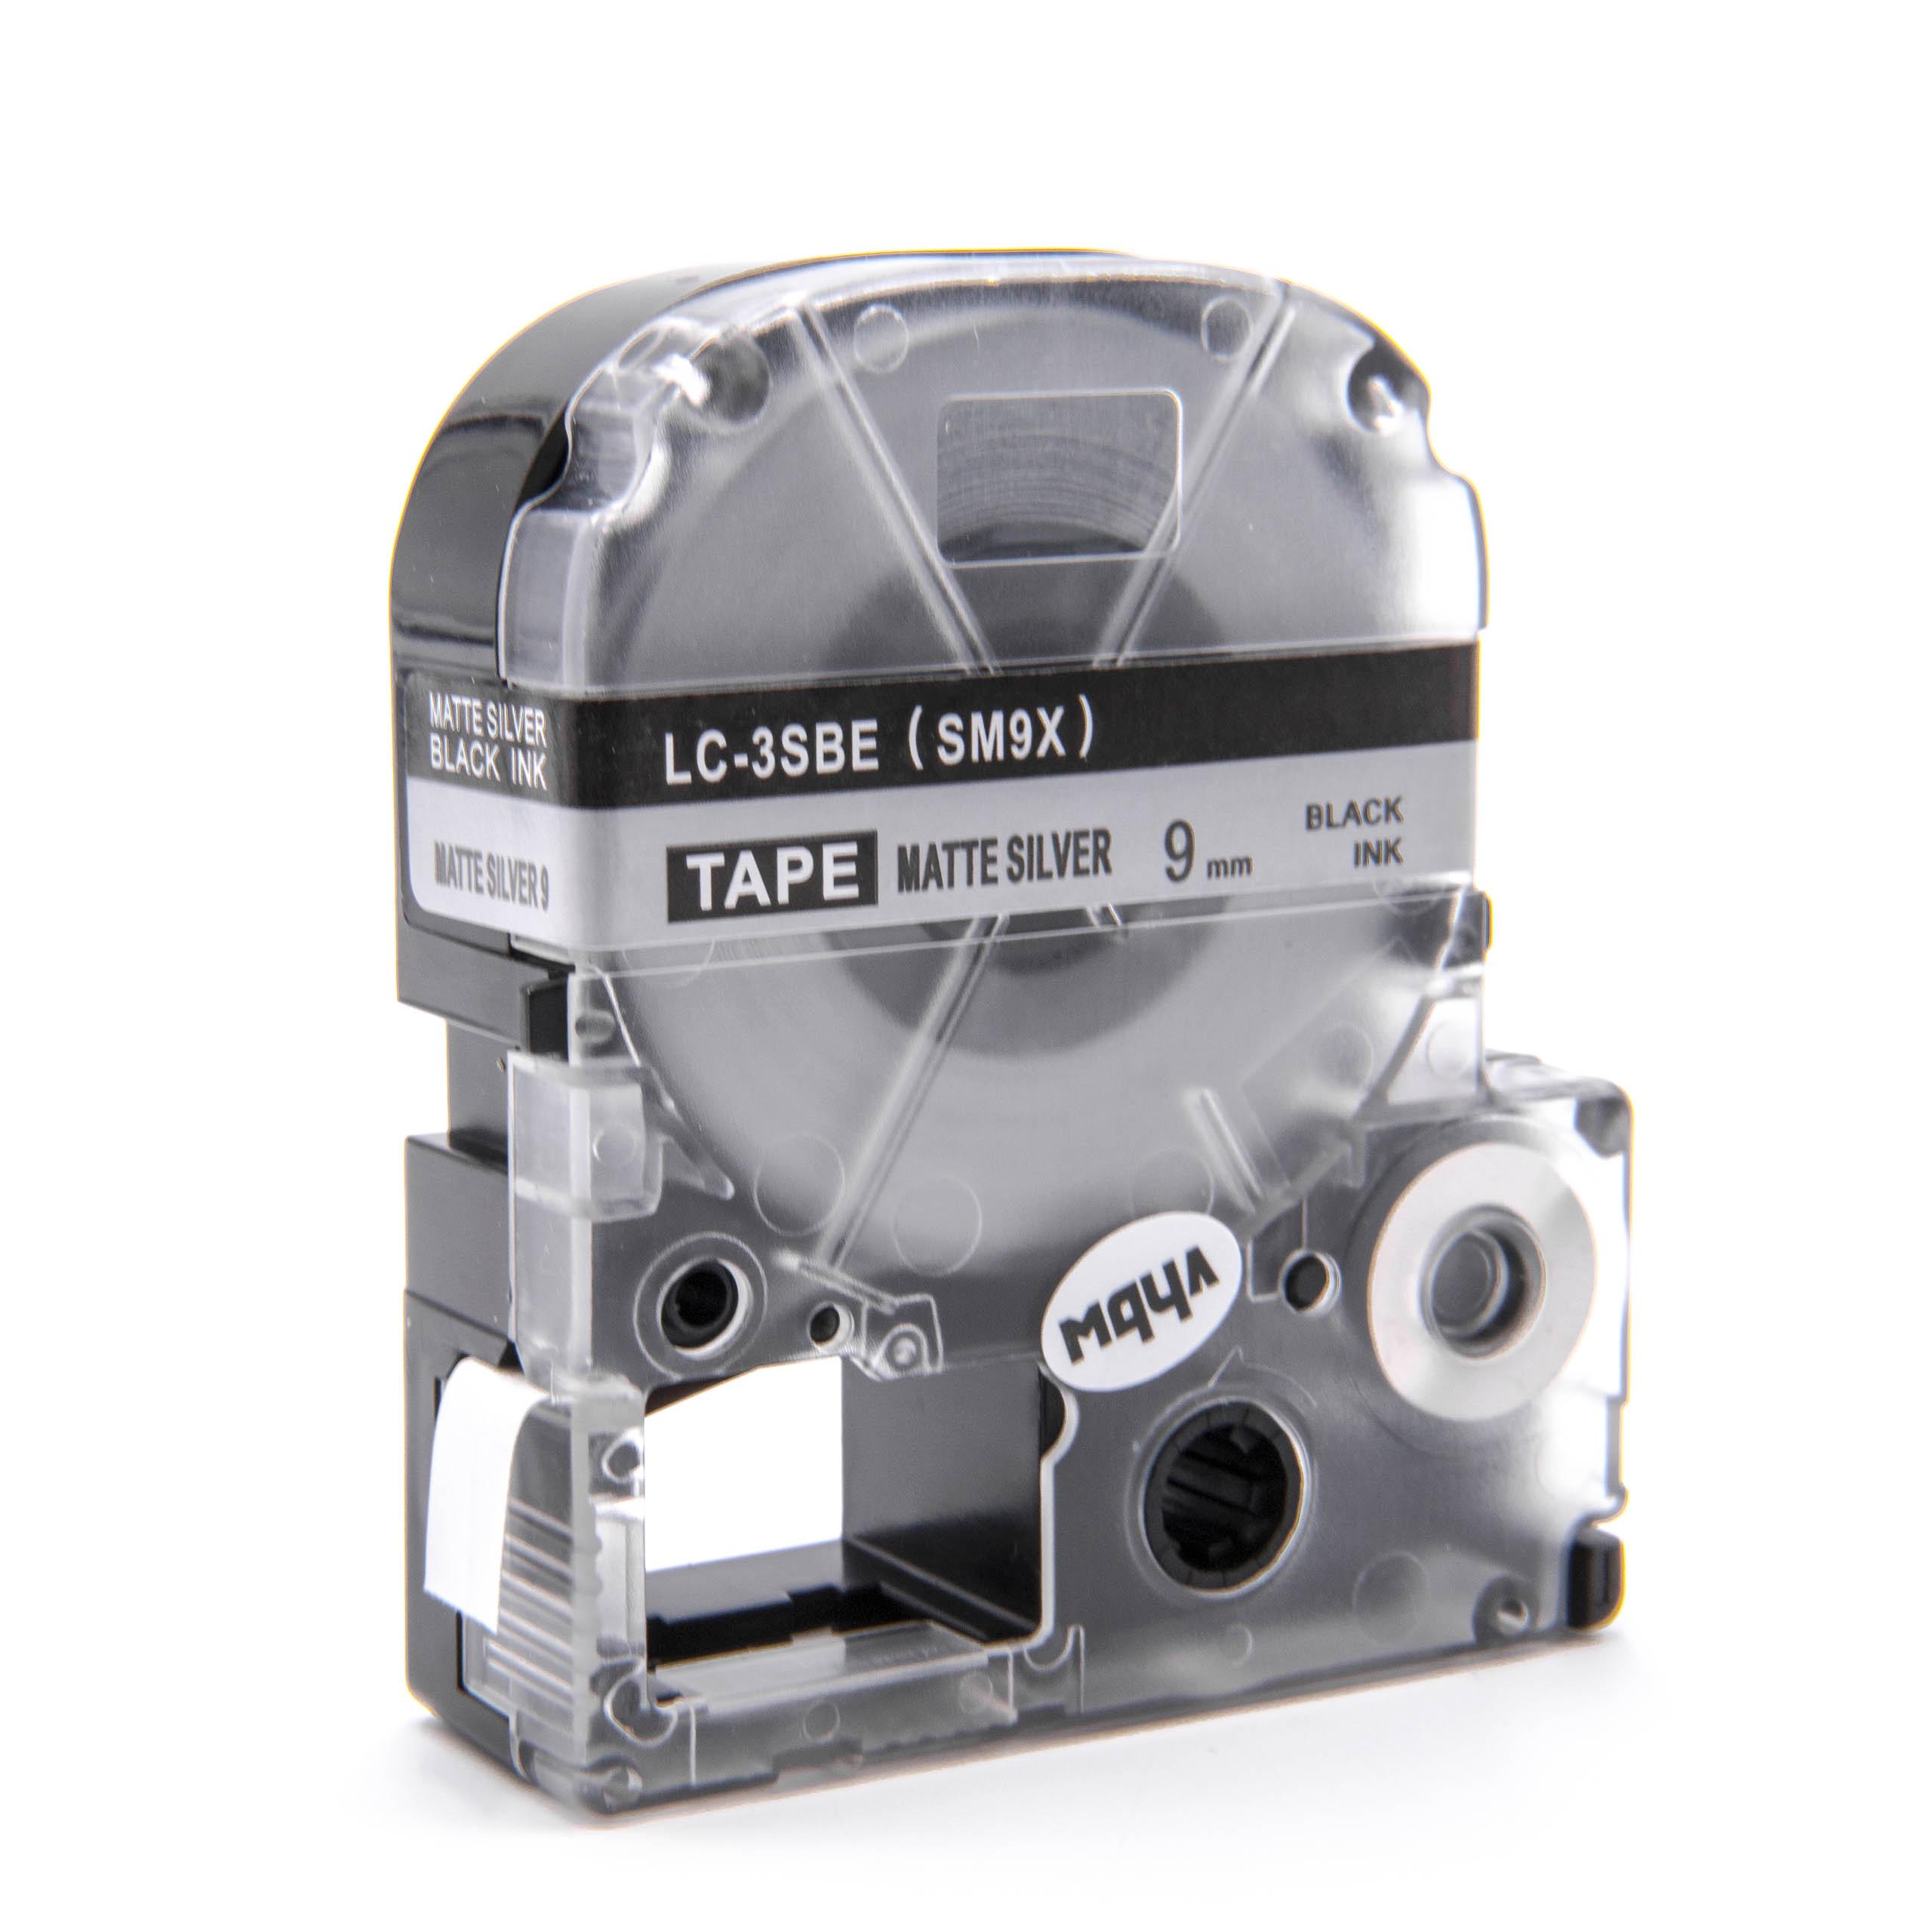 Cassette à ruban remplace Epson LC-3SBE - 9mm lettrage Noir ruban Argent